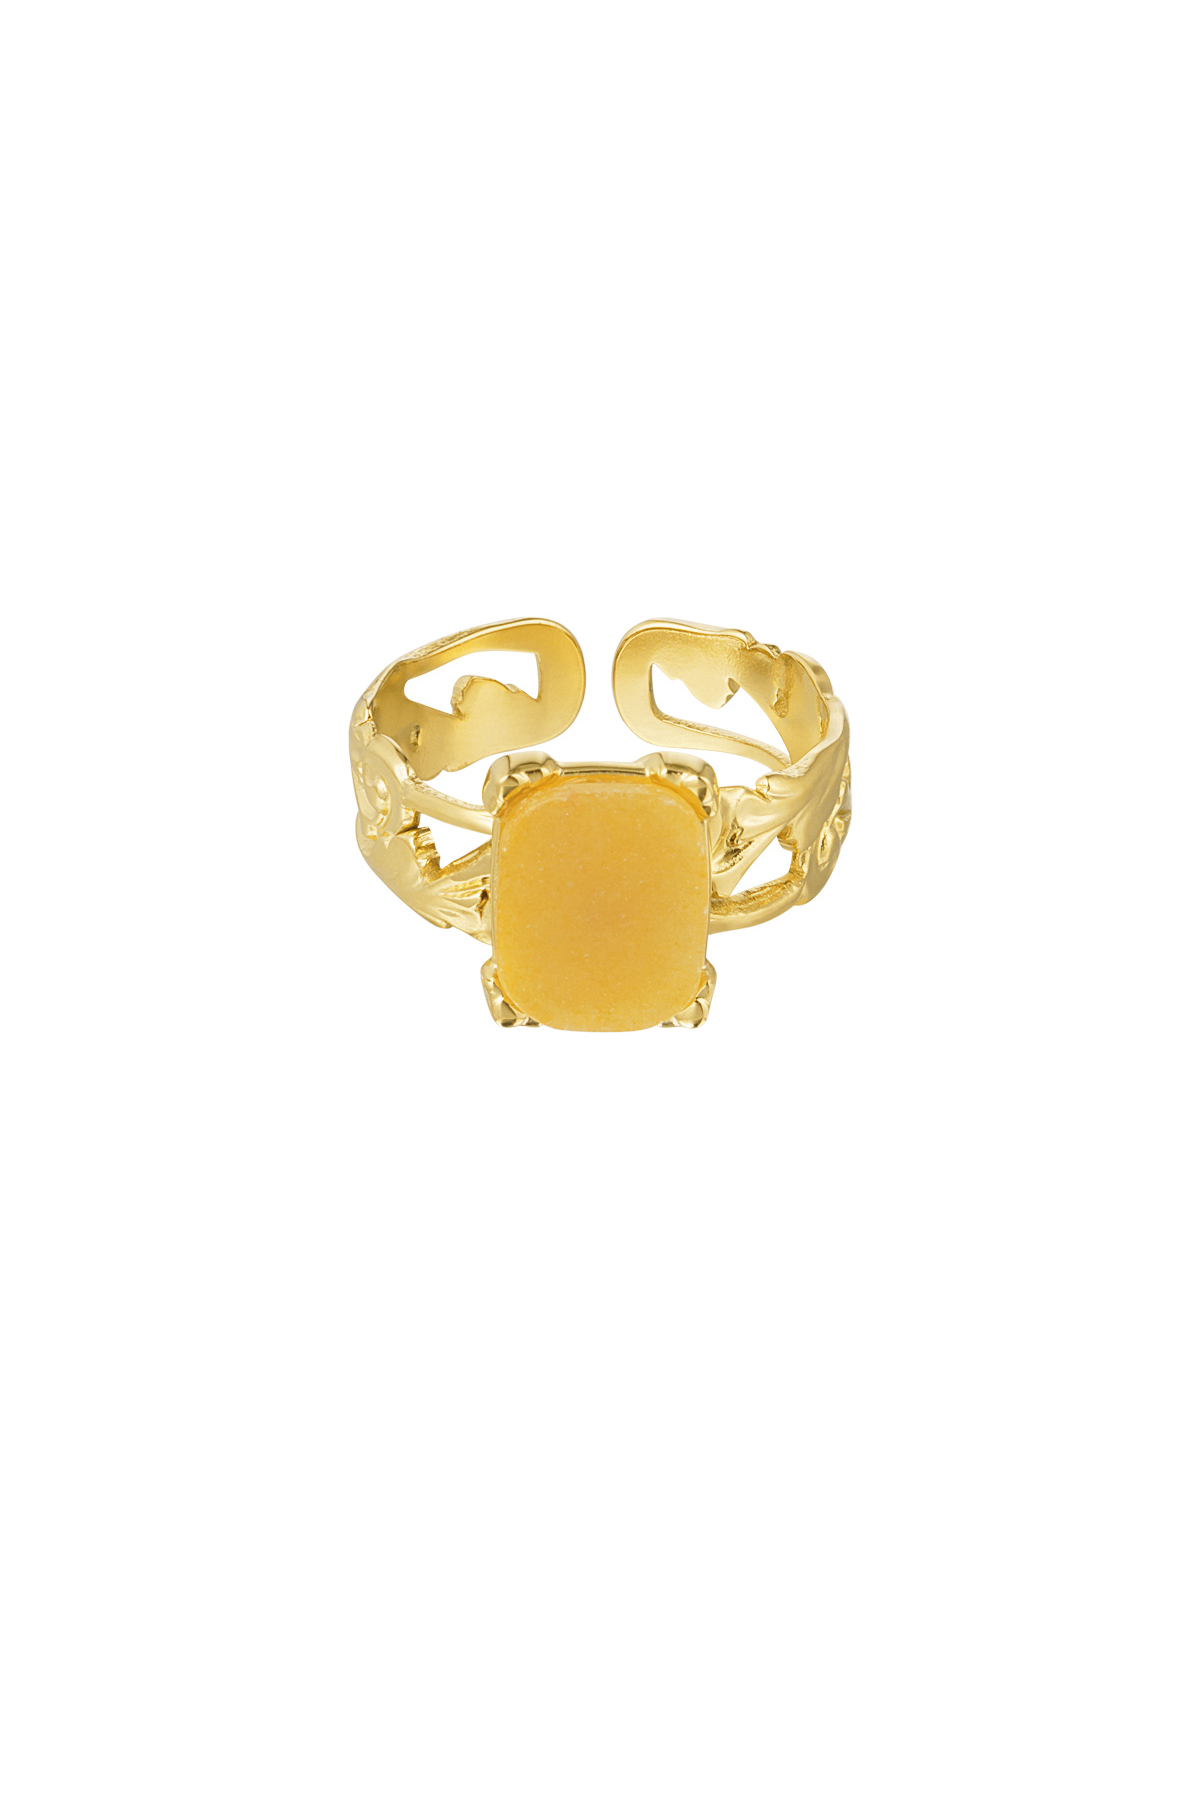 Anello elegante pietra rettangolare - oro/arancio h5 